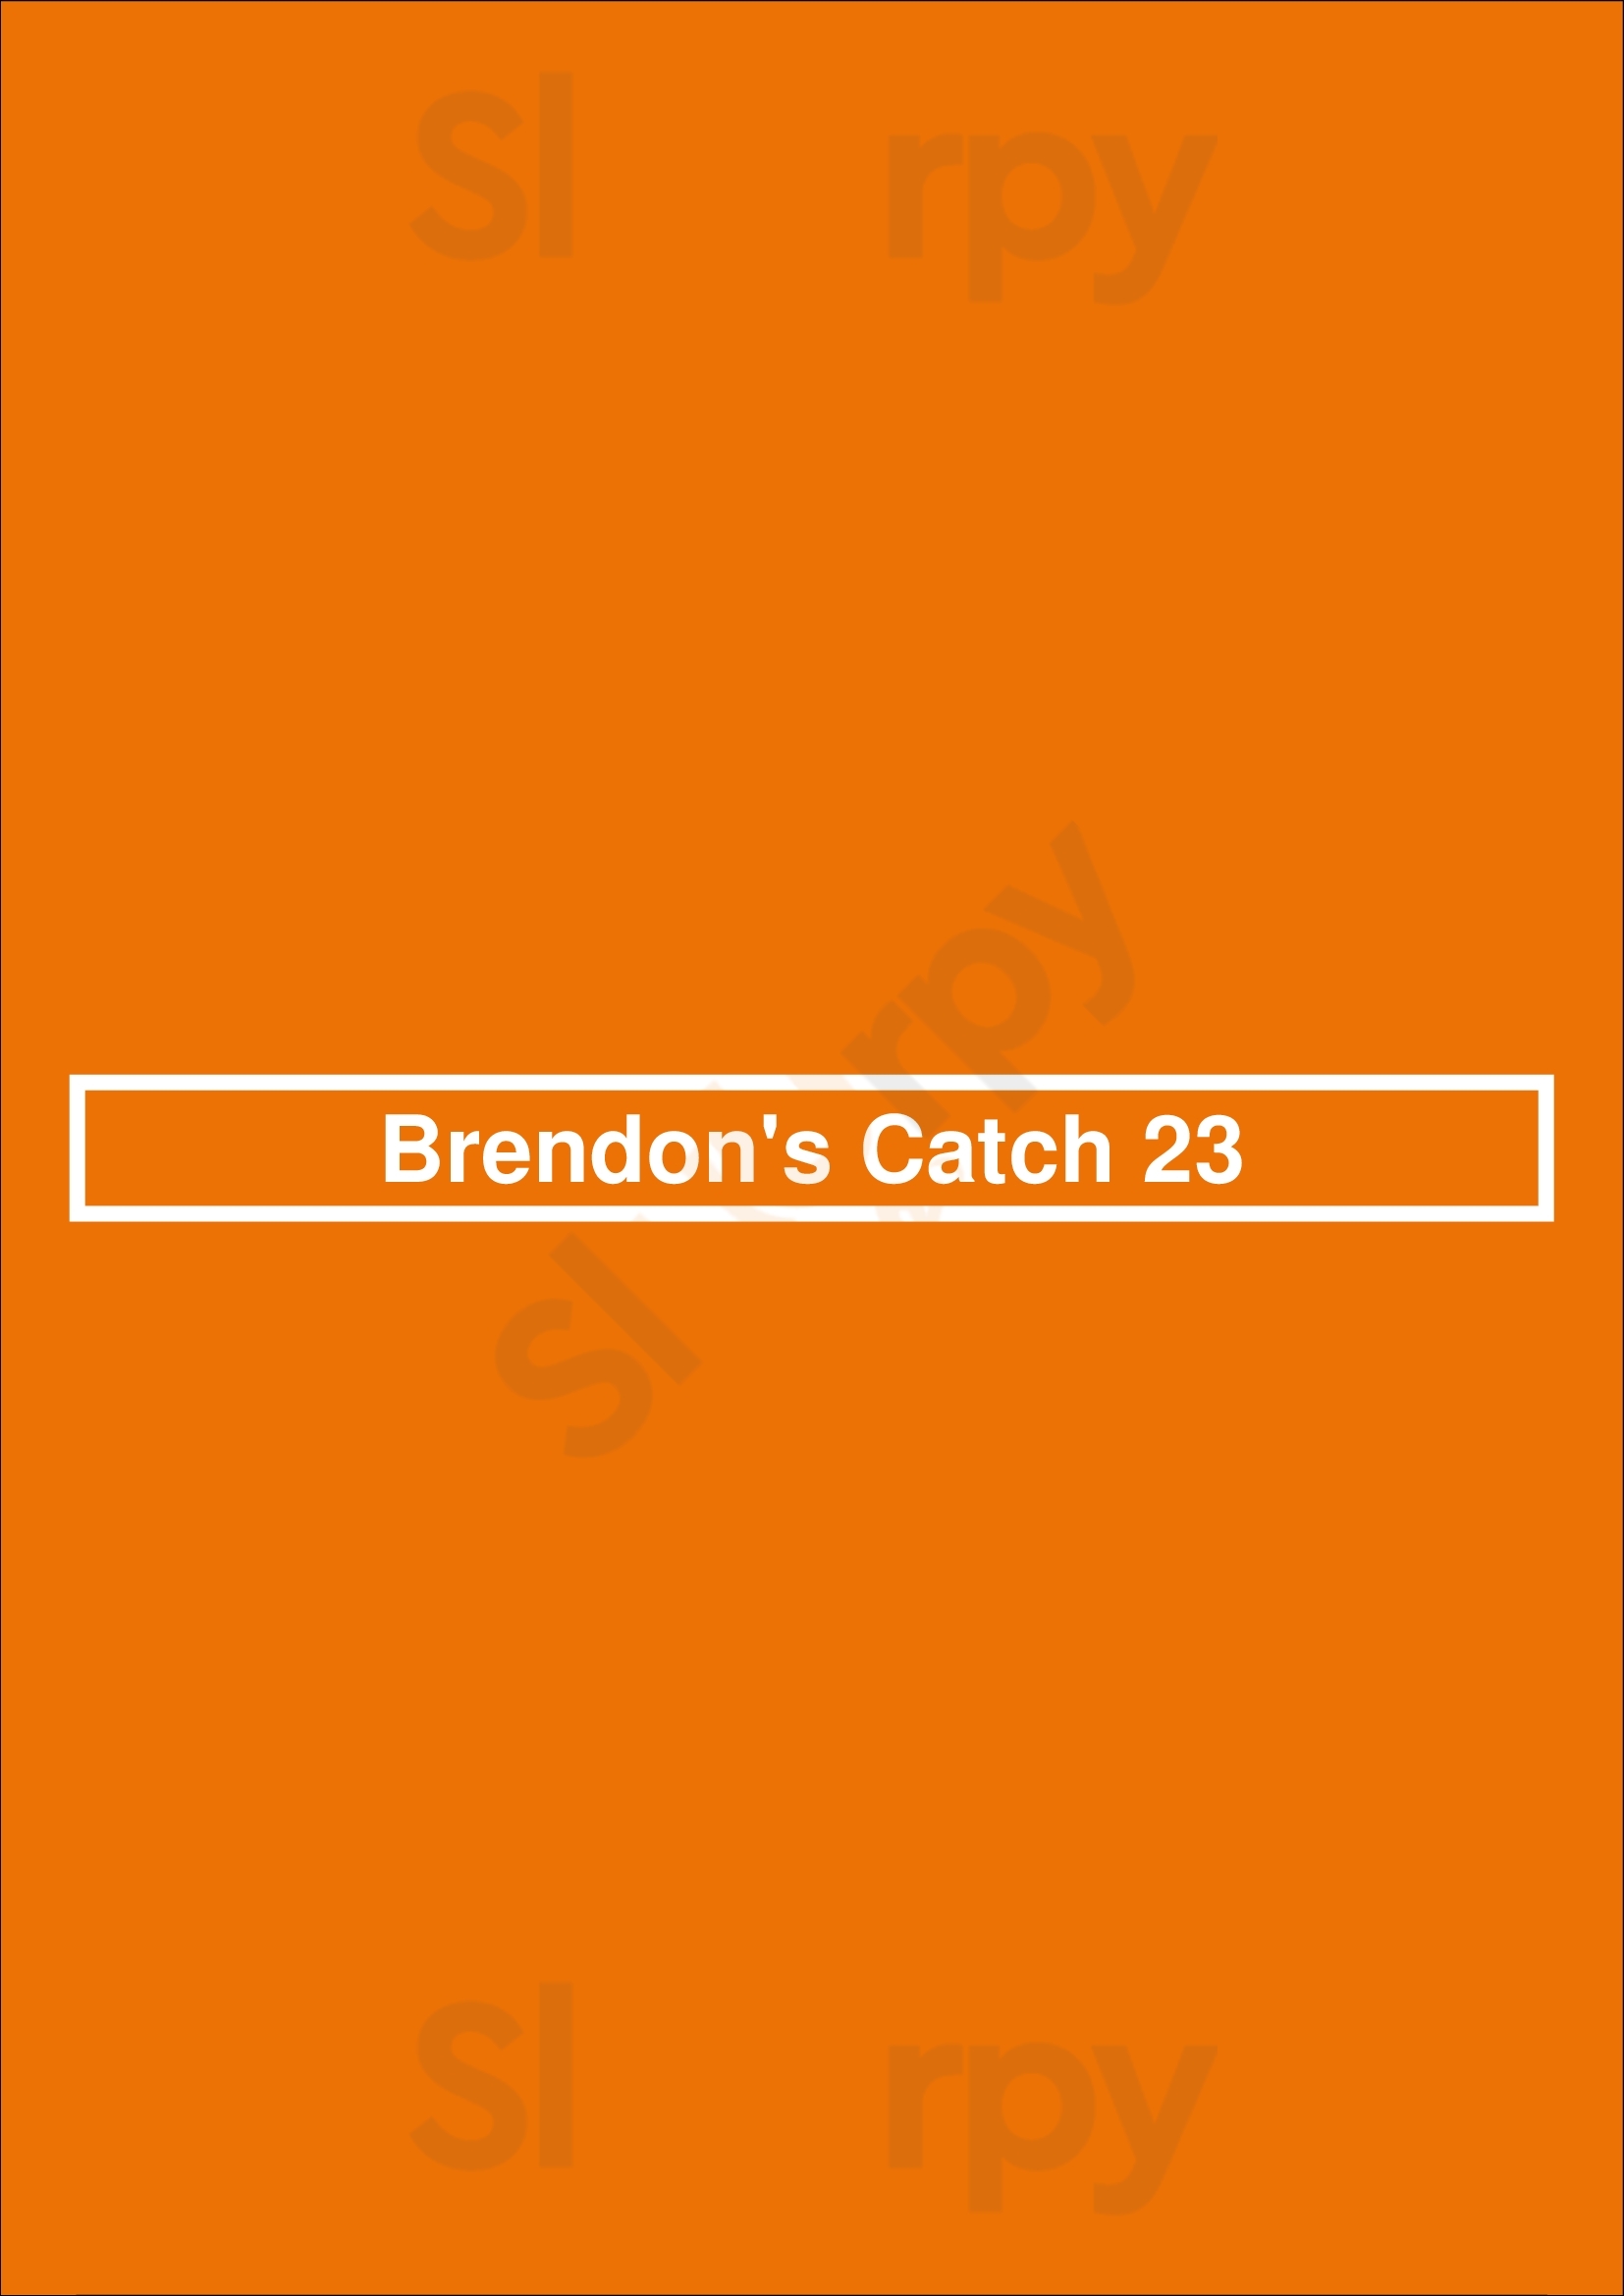 Brendon's Catch 23 Louisville Menu - 1